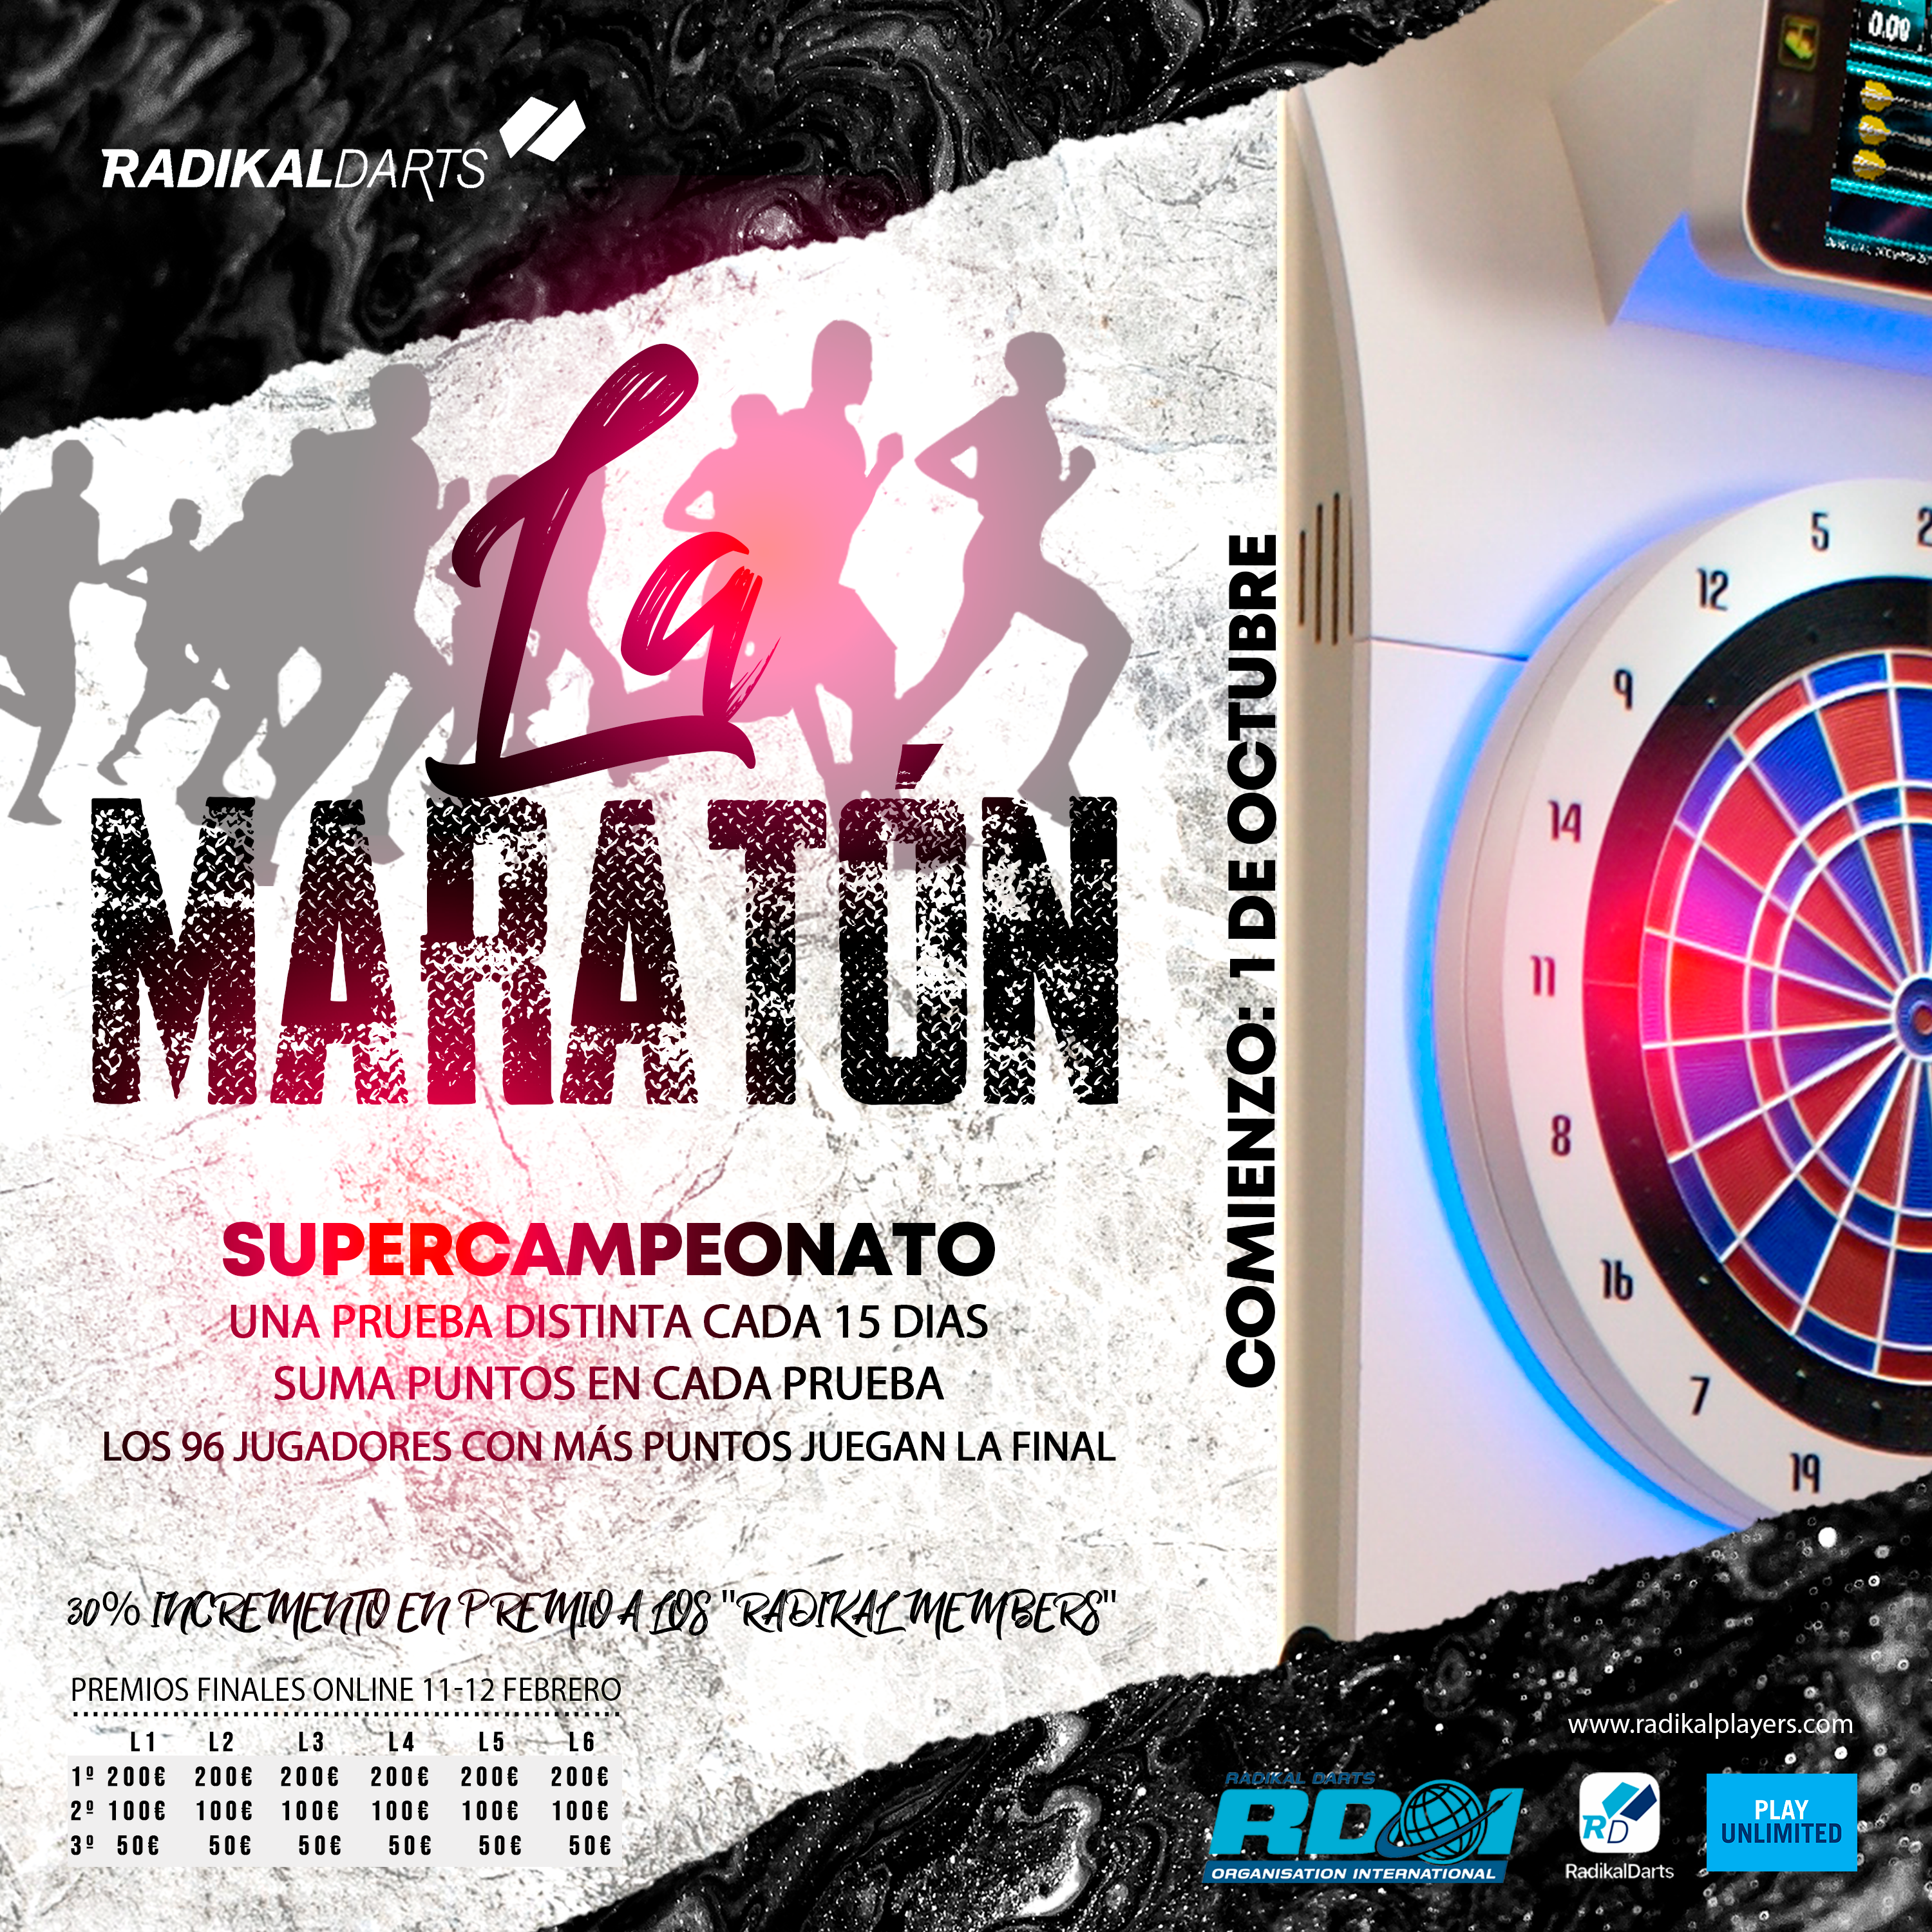 Super Campeonato de dardos La MaratÃ³n de Radikal Darts